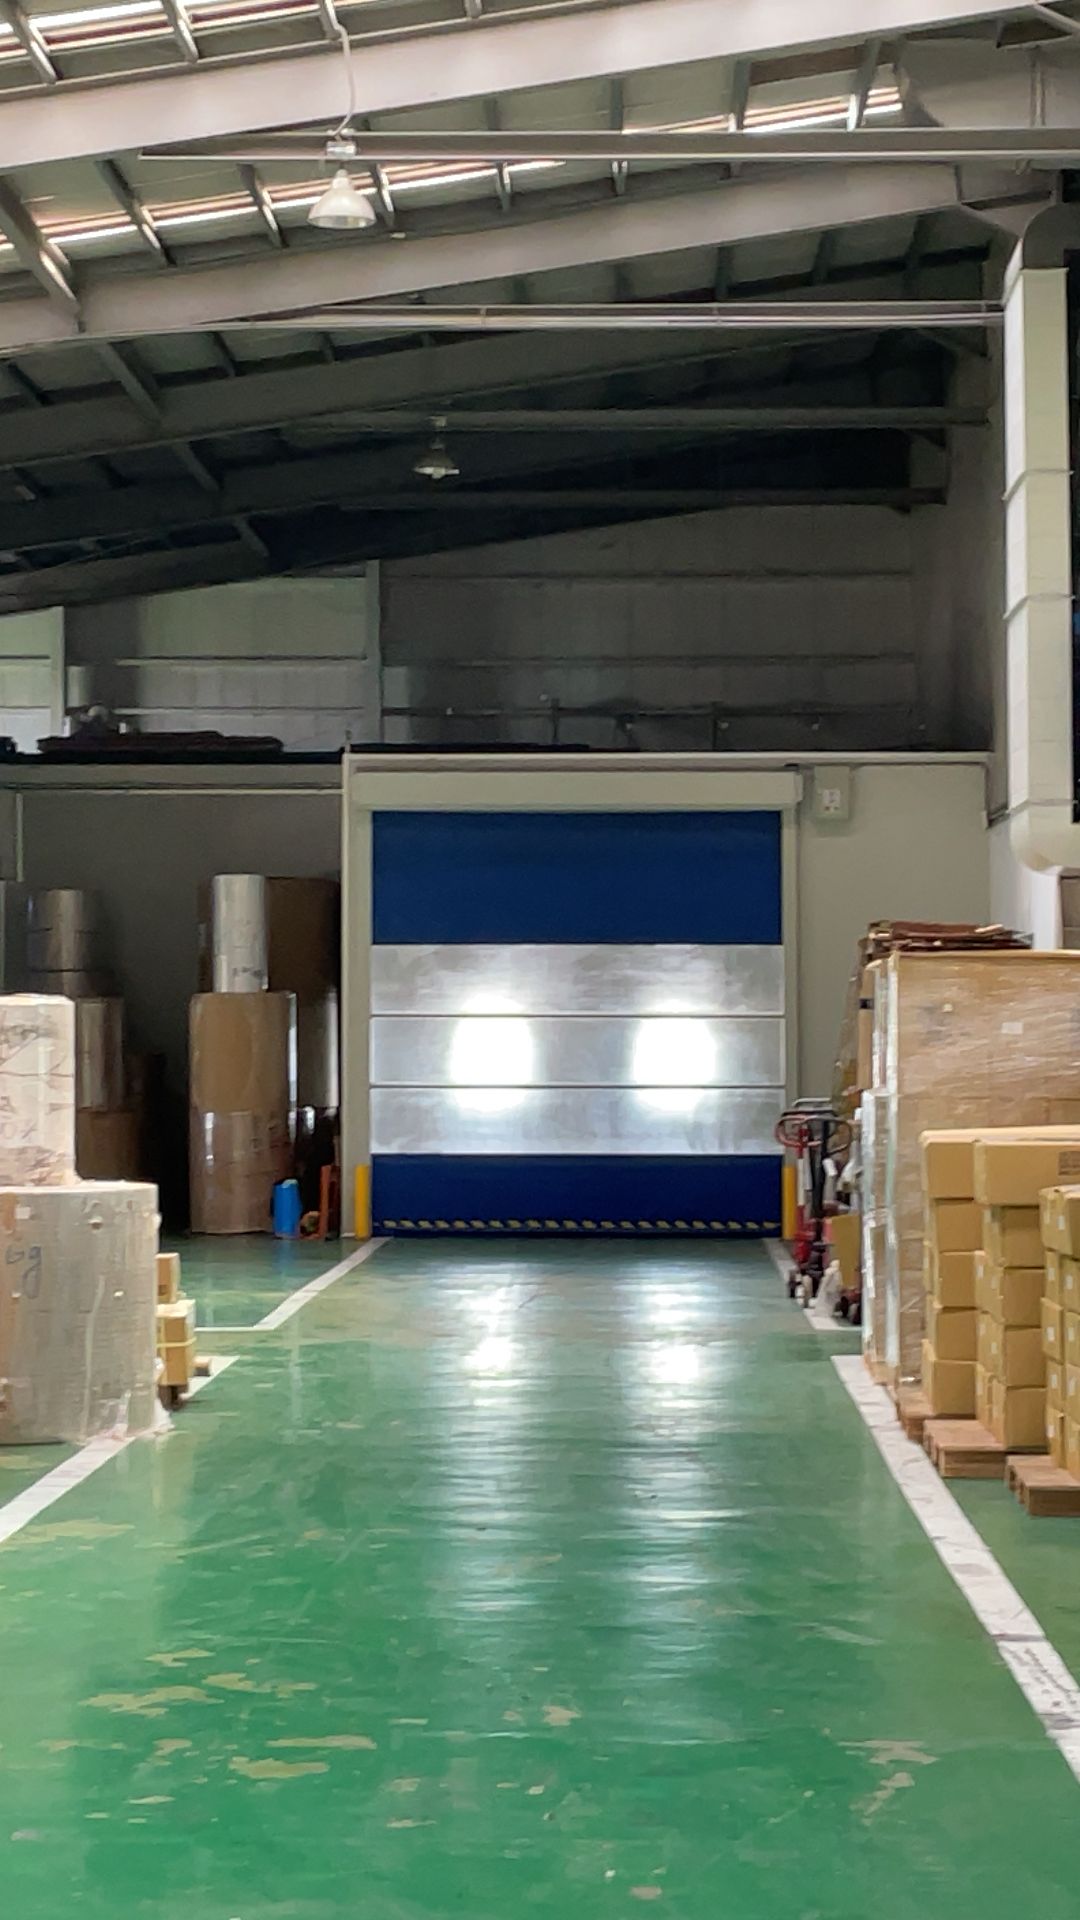 фотографія чистої та добре керованої фабрики, яка забезпечує безпечне робоче середовище
Chun Yu Plastic